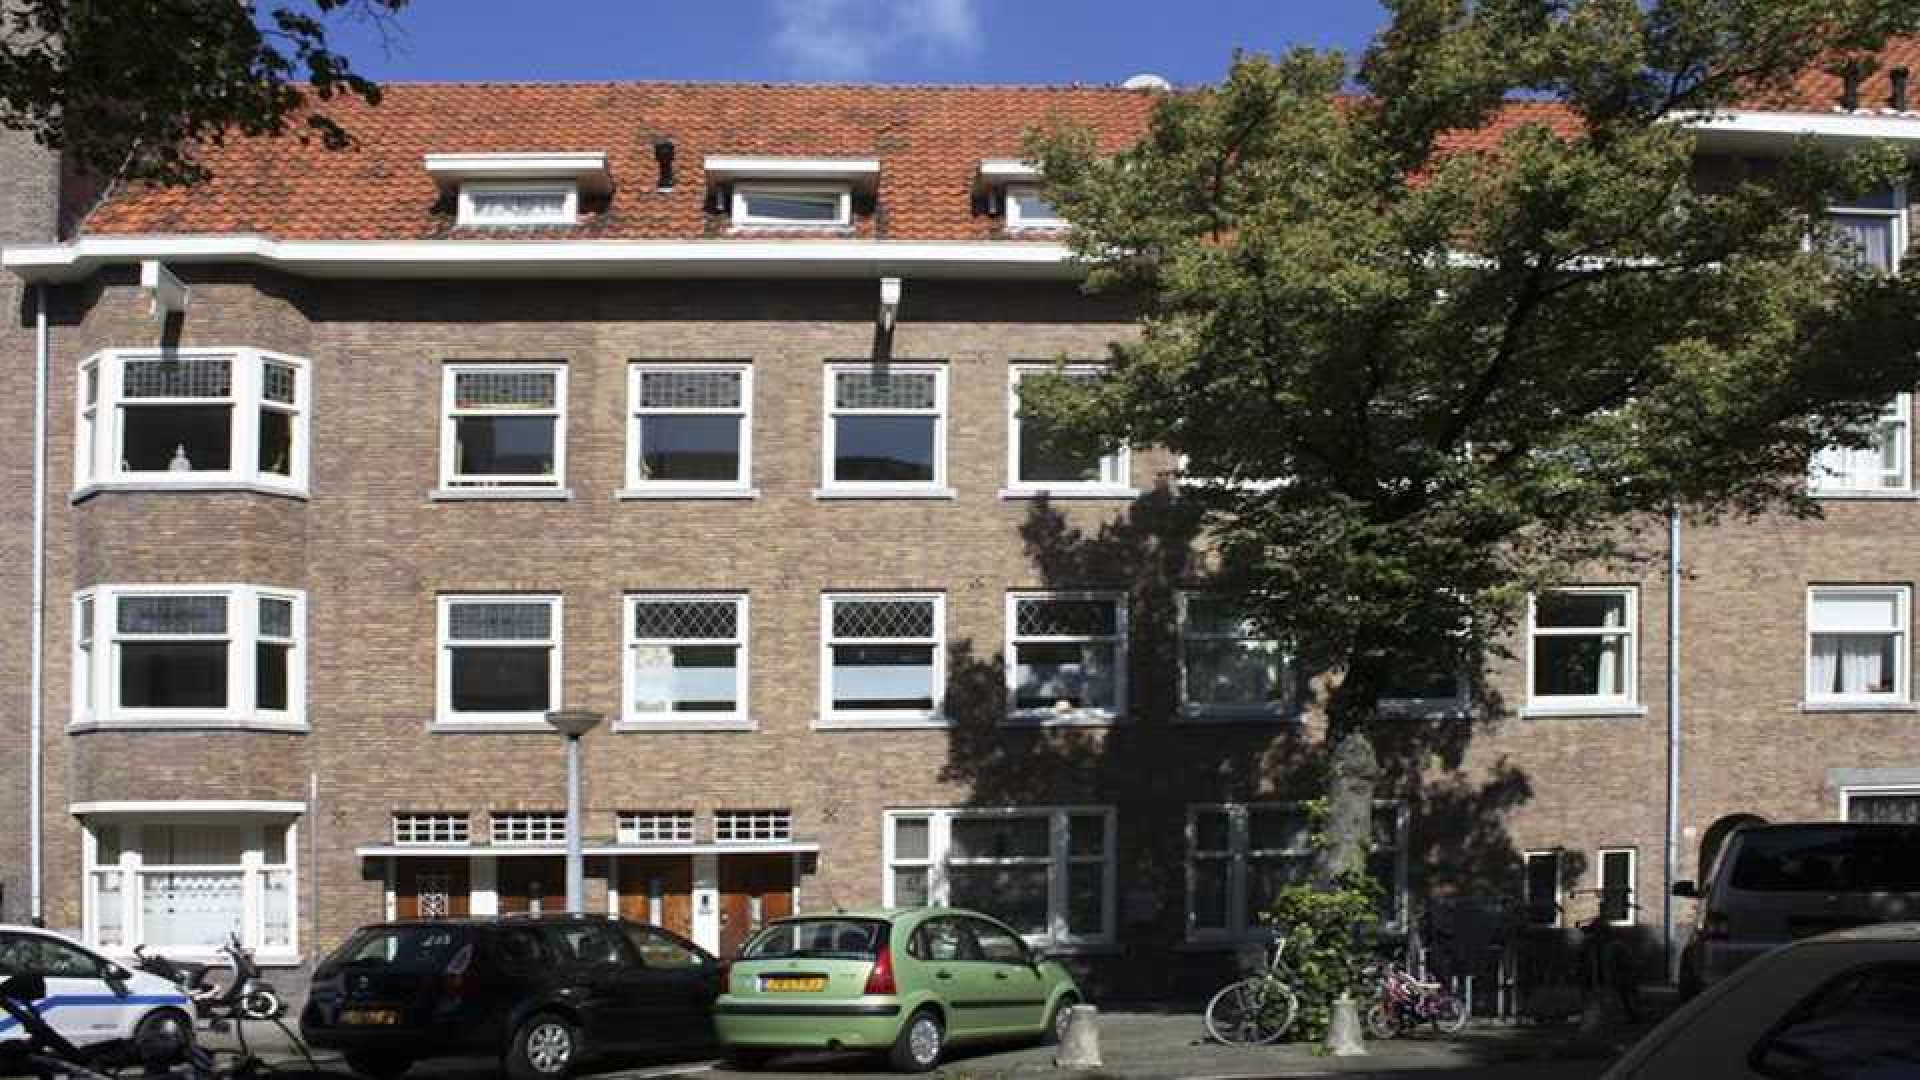 Tjitske Reidinga koopt eigen huis in Amsterdam. Zie foto's 1